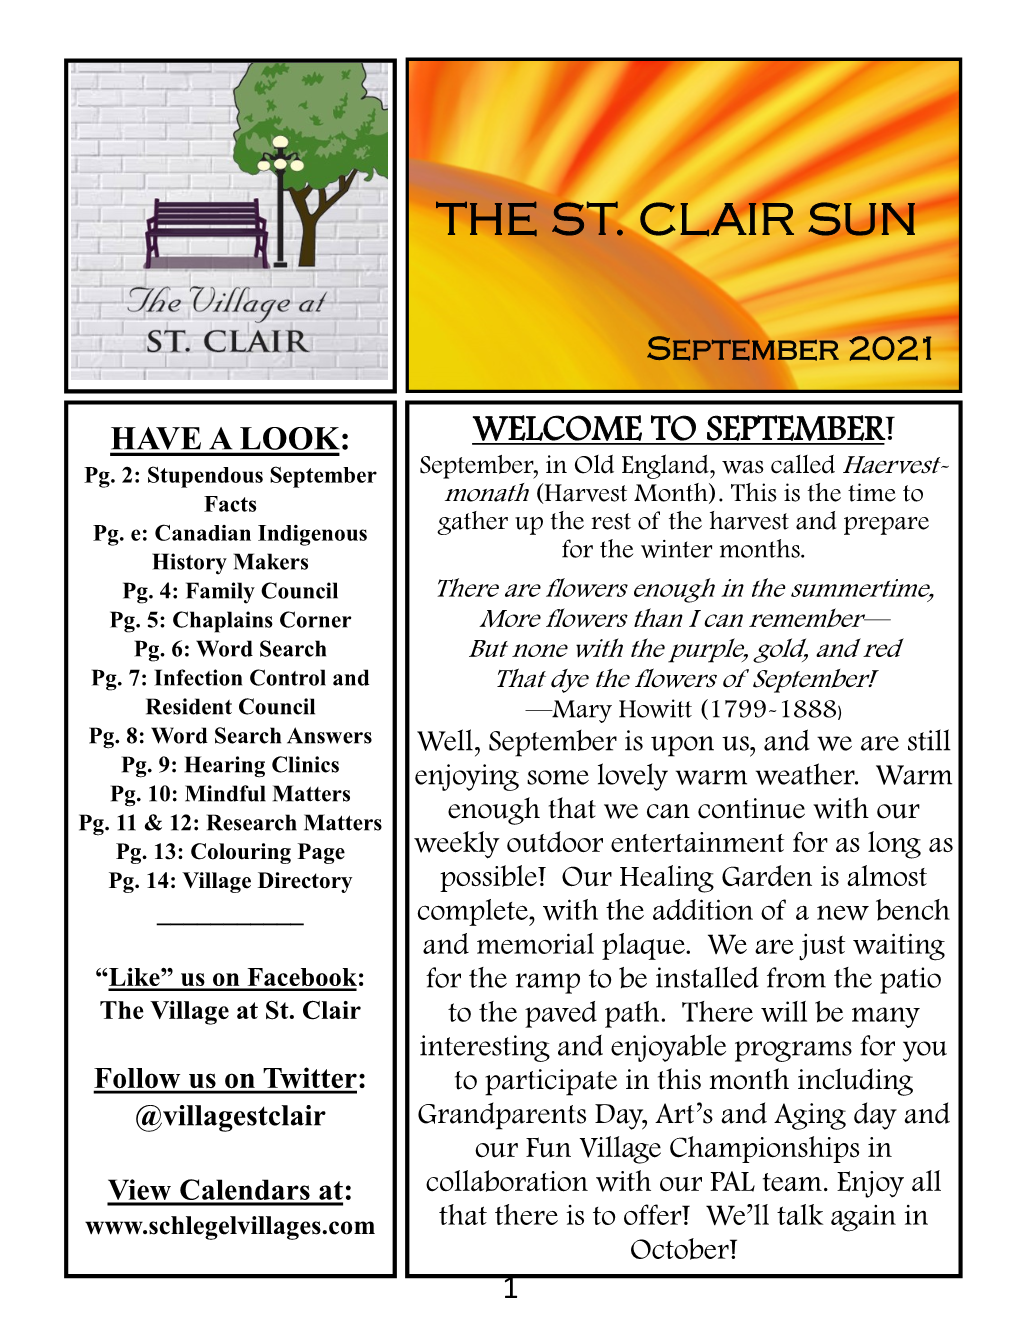 The St. Clair Sun